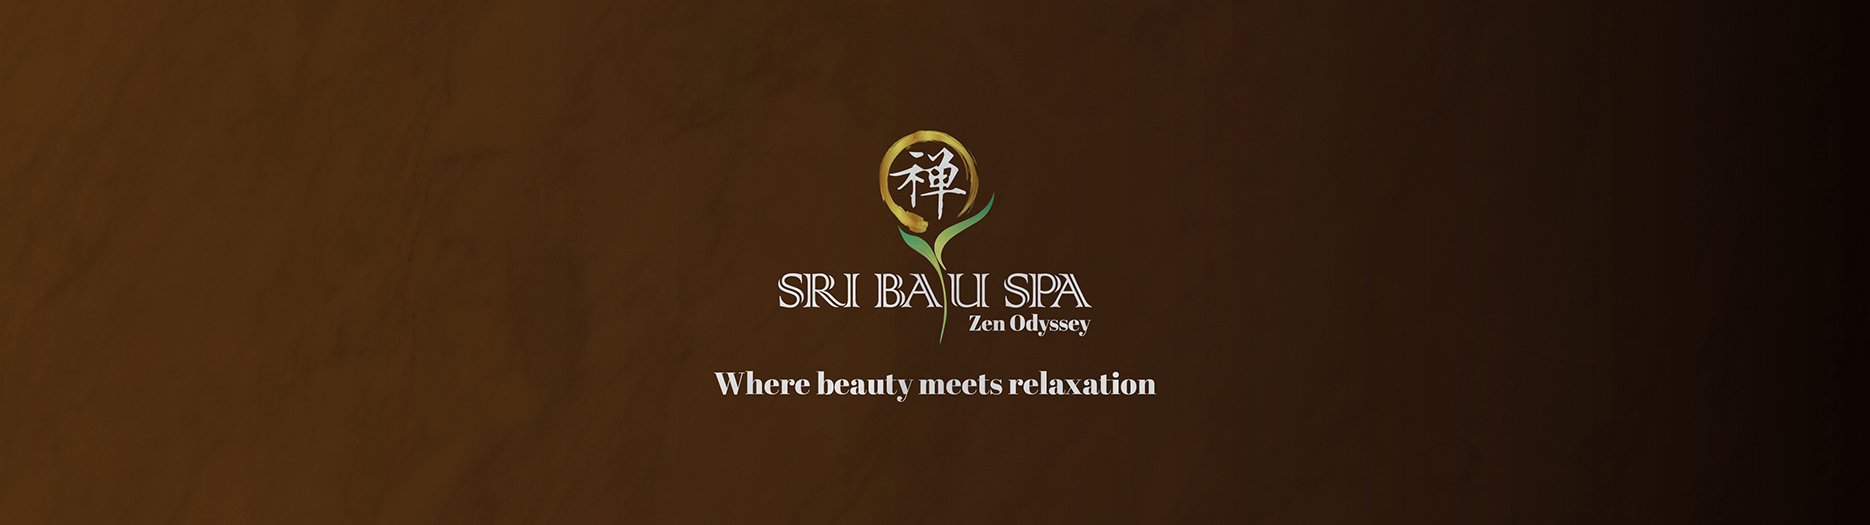 Sri-Bayu-Zen-Odyssey-Spa-Banner